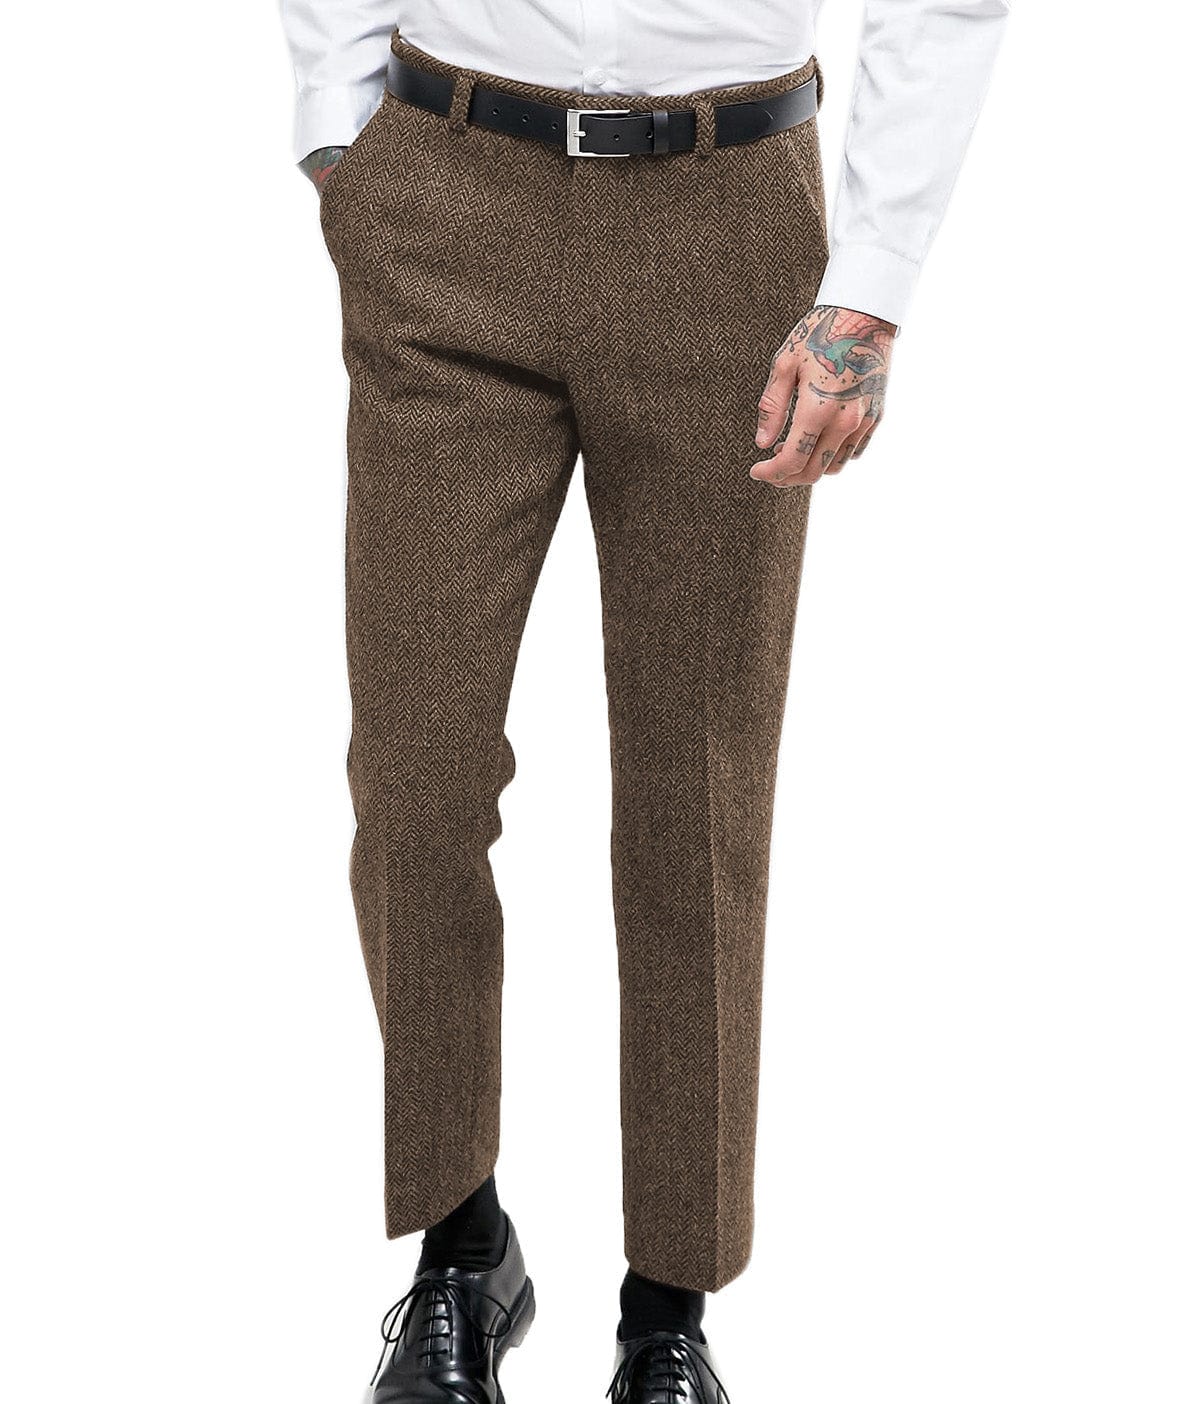 Aesido Herringbone Tweed Trousers